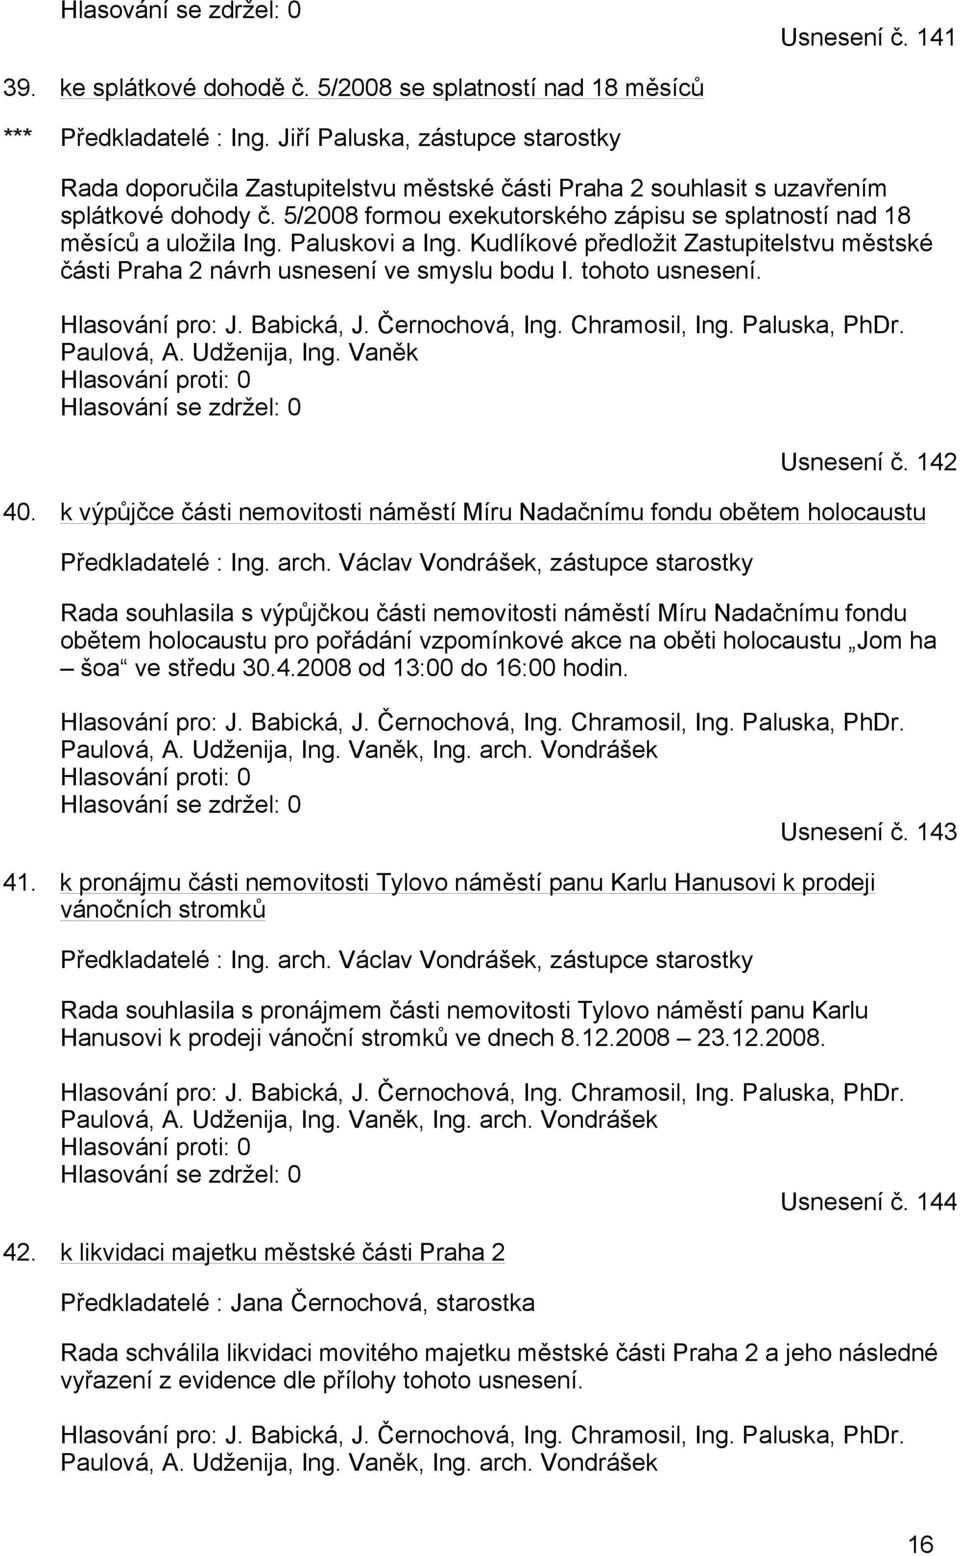 5/2008 formou exekutorského zápisu se splatností nad 18 měsíců a uložila Ing. Paluskovi a Ing. Kudlíkové předložit Zastupitelstvu městské části Praha 2 návrh usnesení ve smyslu bodu I.